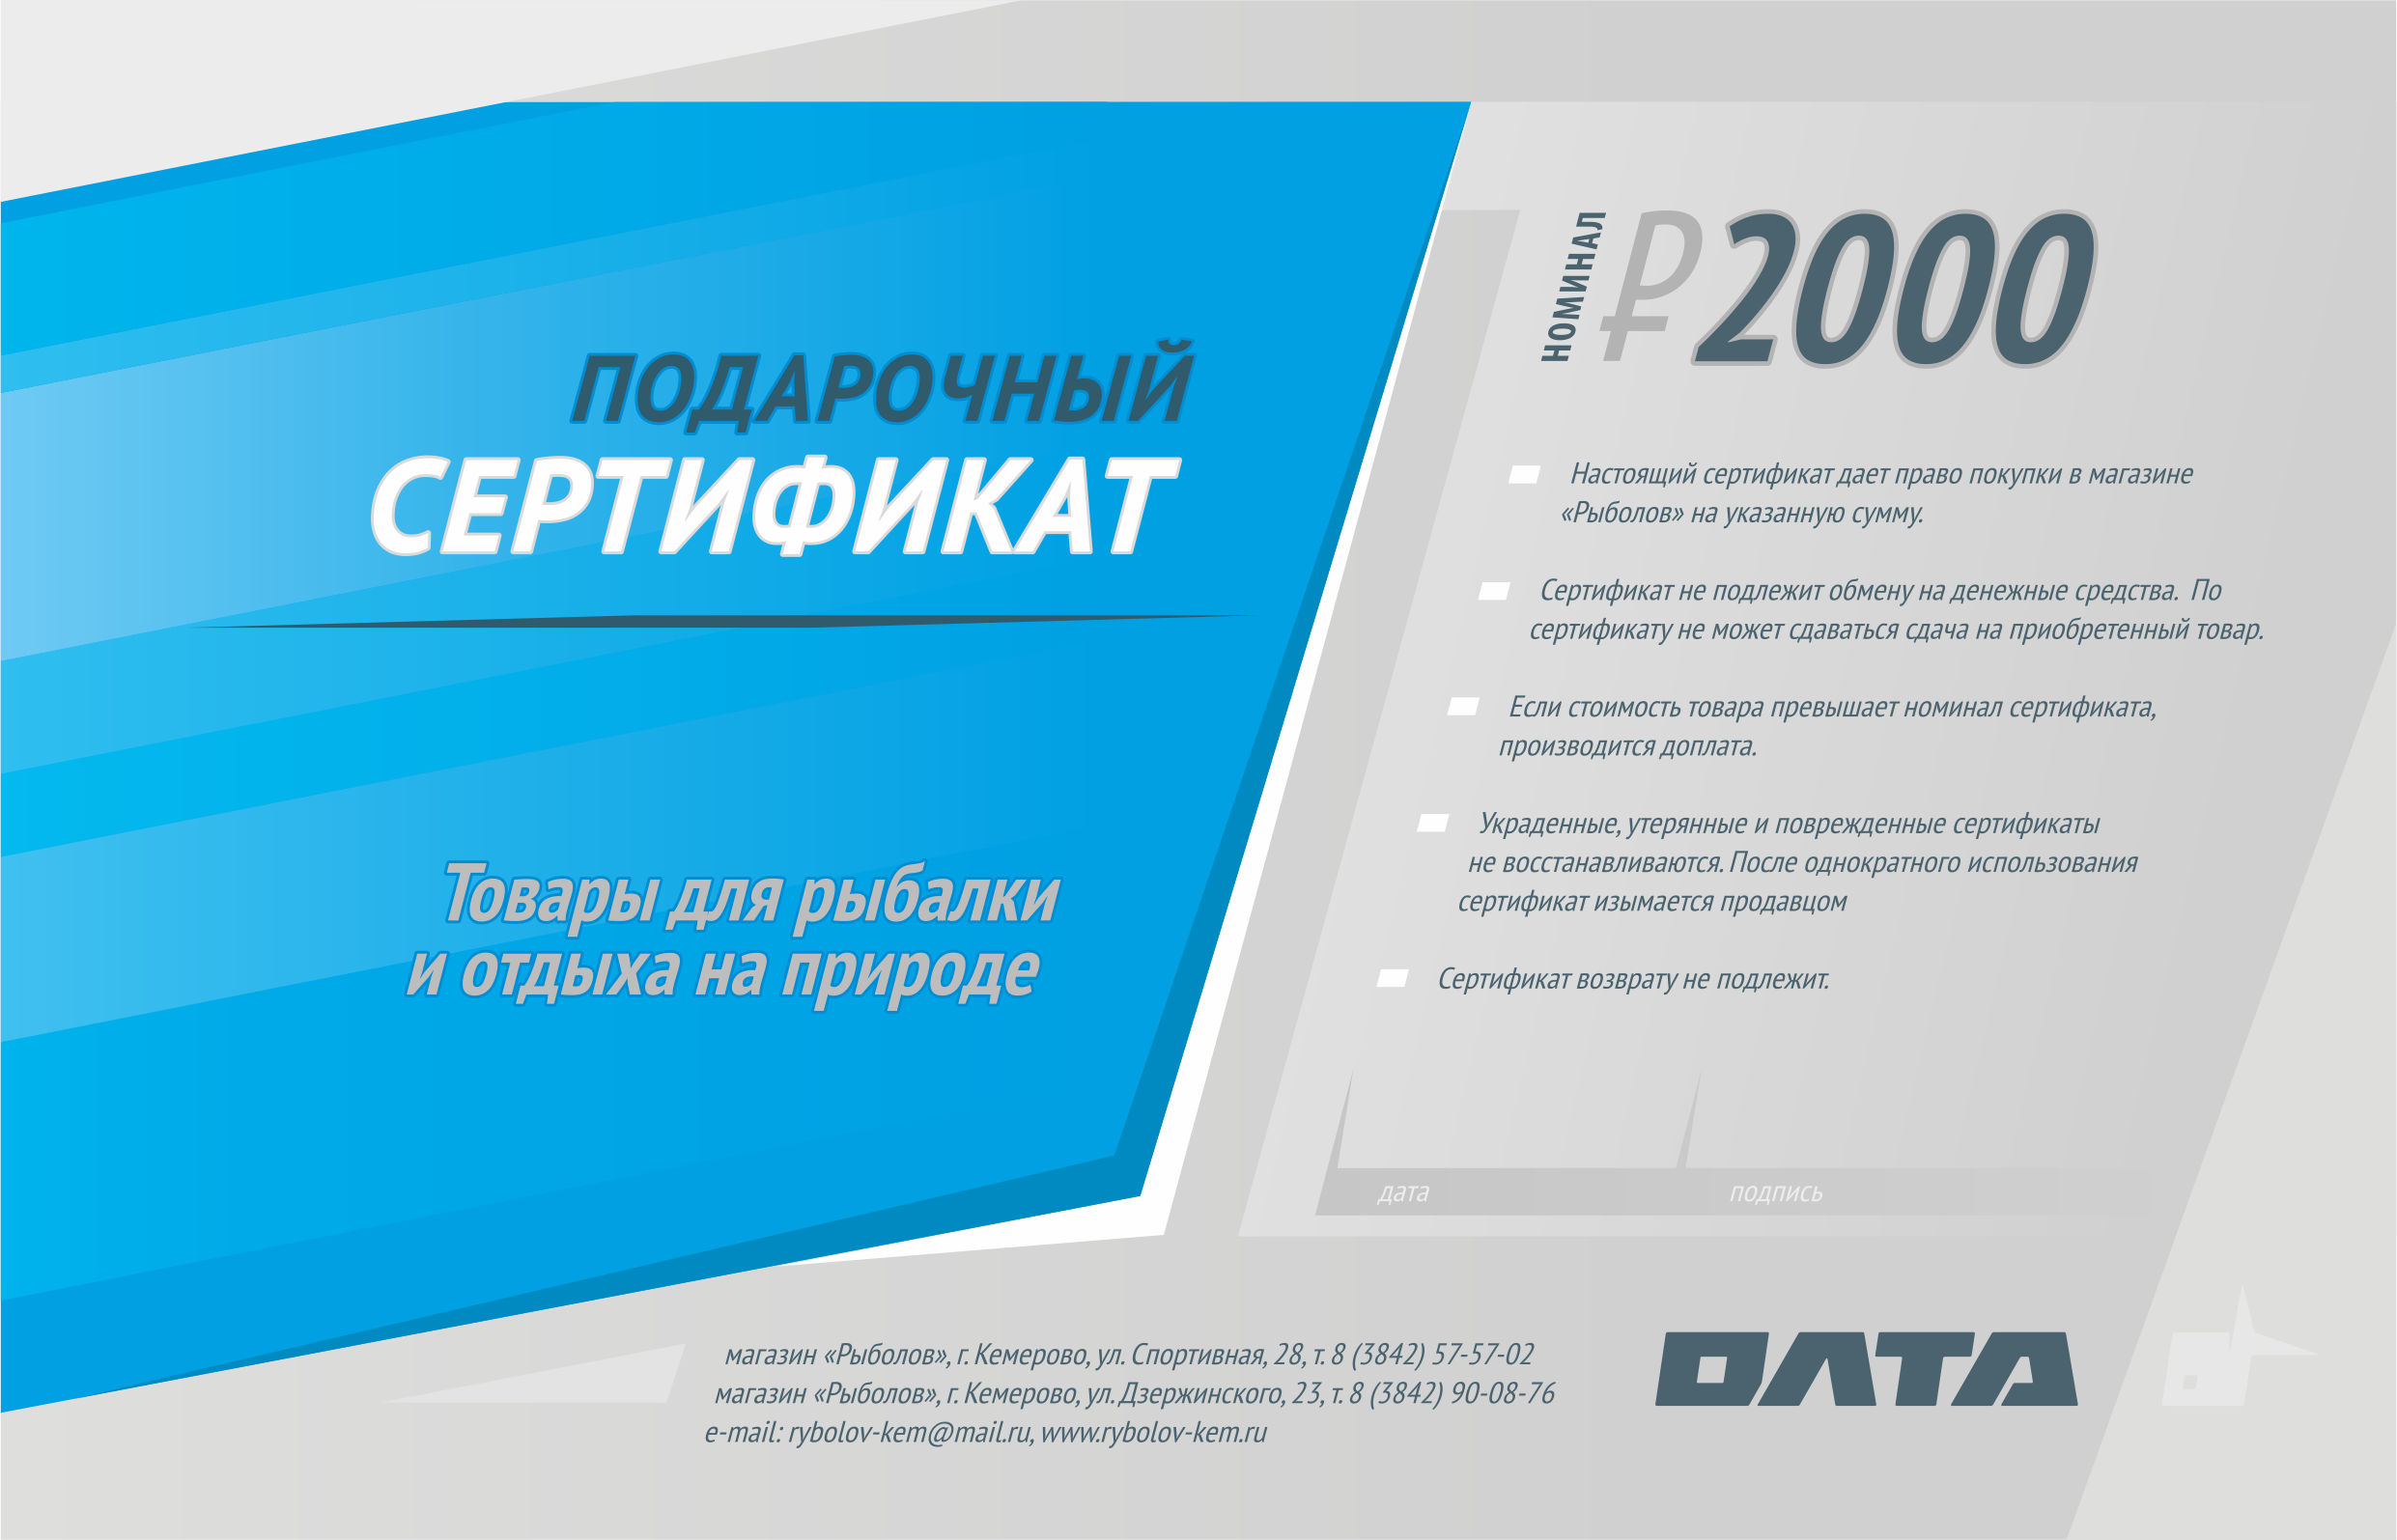 Подарочный сертификат, номинал 2000 рублей